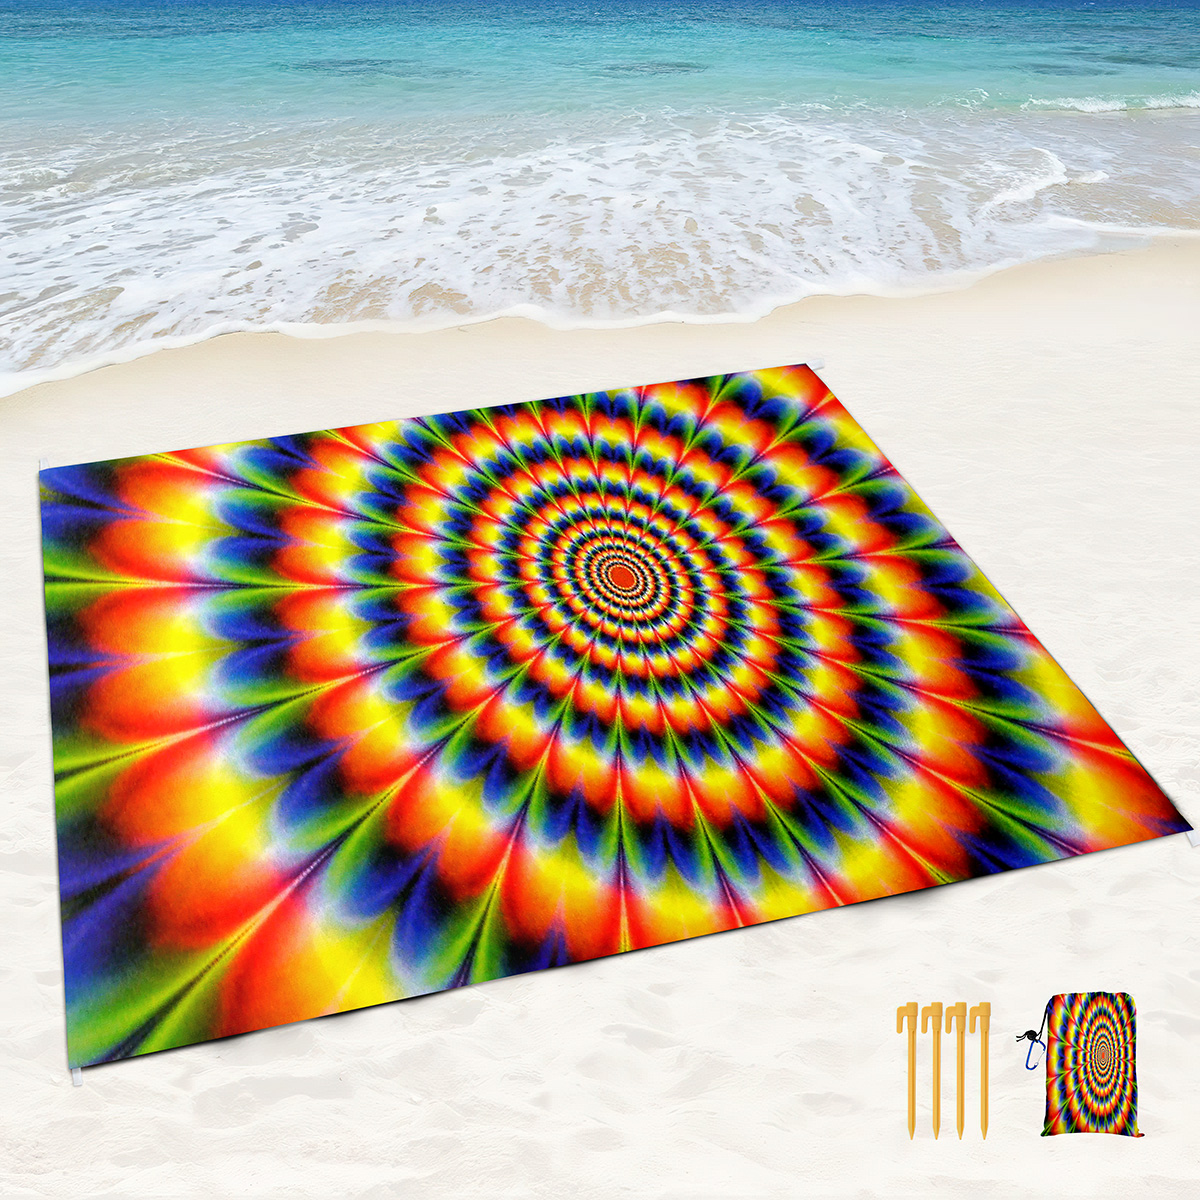 Психоделический красочный пляжный одеял с песком.